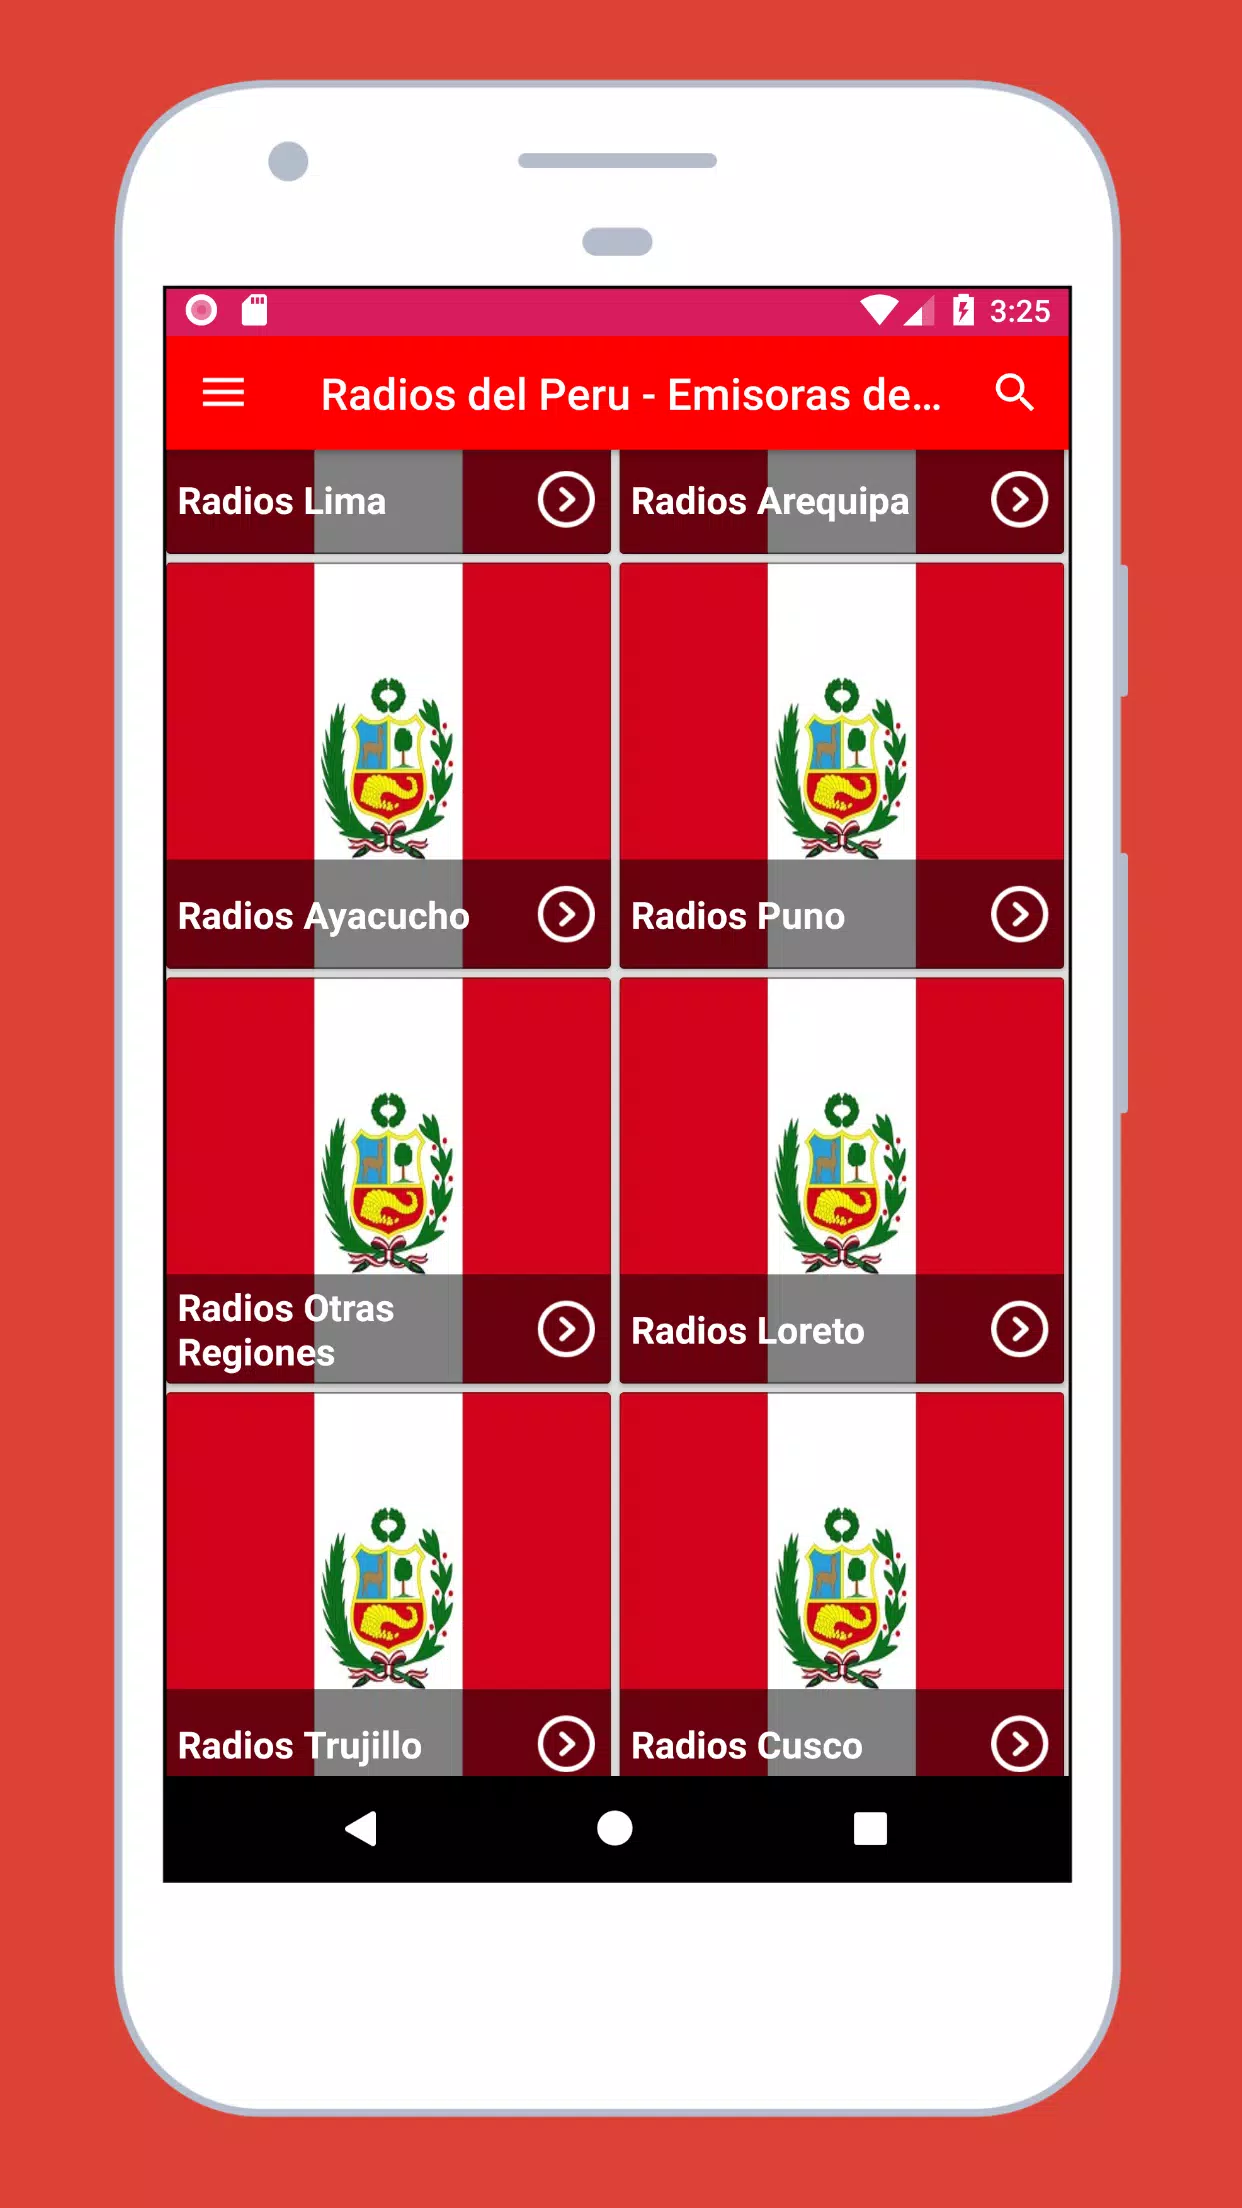 Radio Emisoras de Peru en Vivo for Android - APK Download